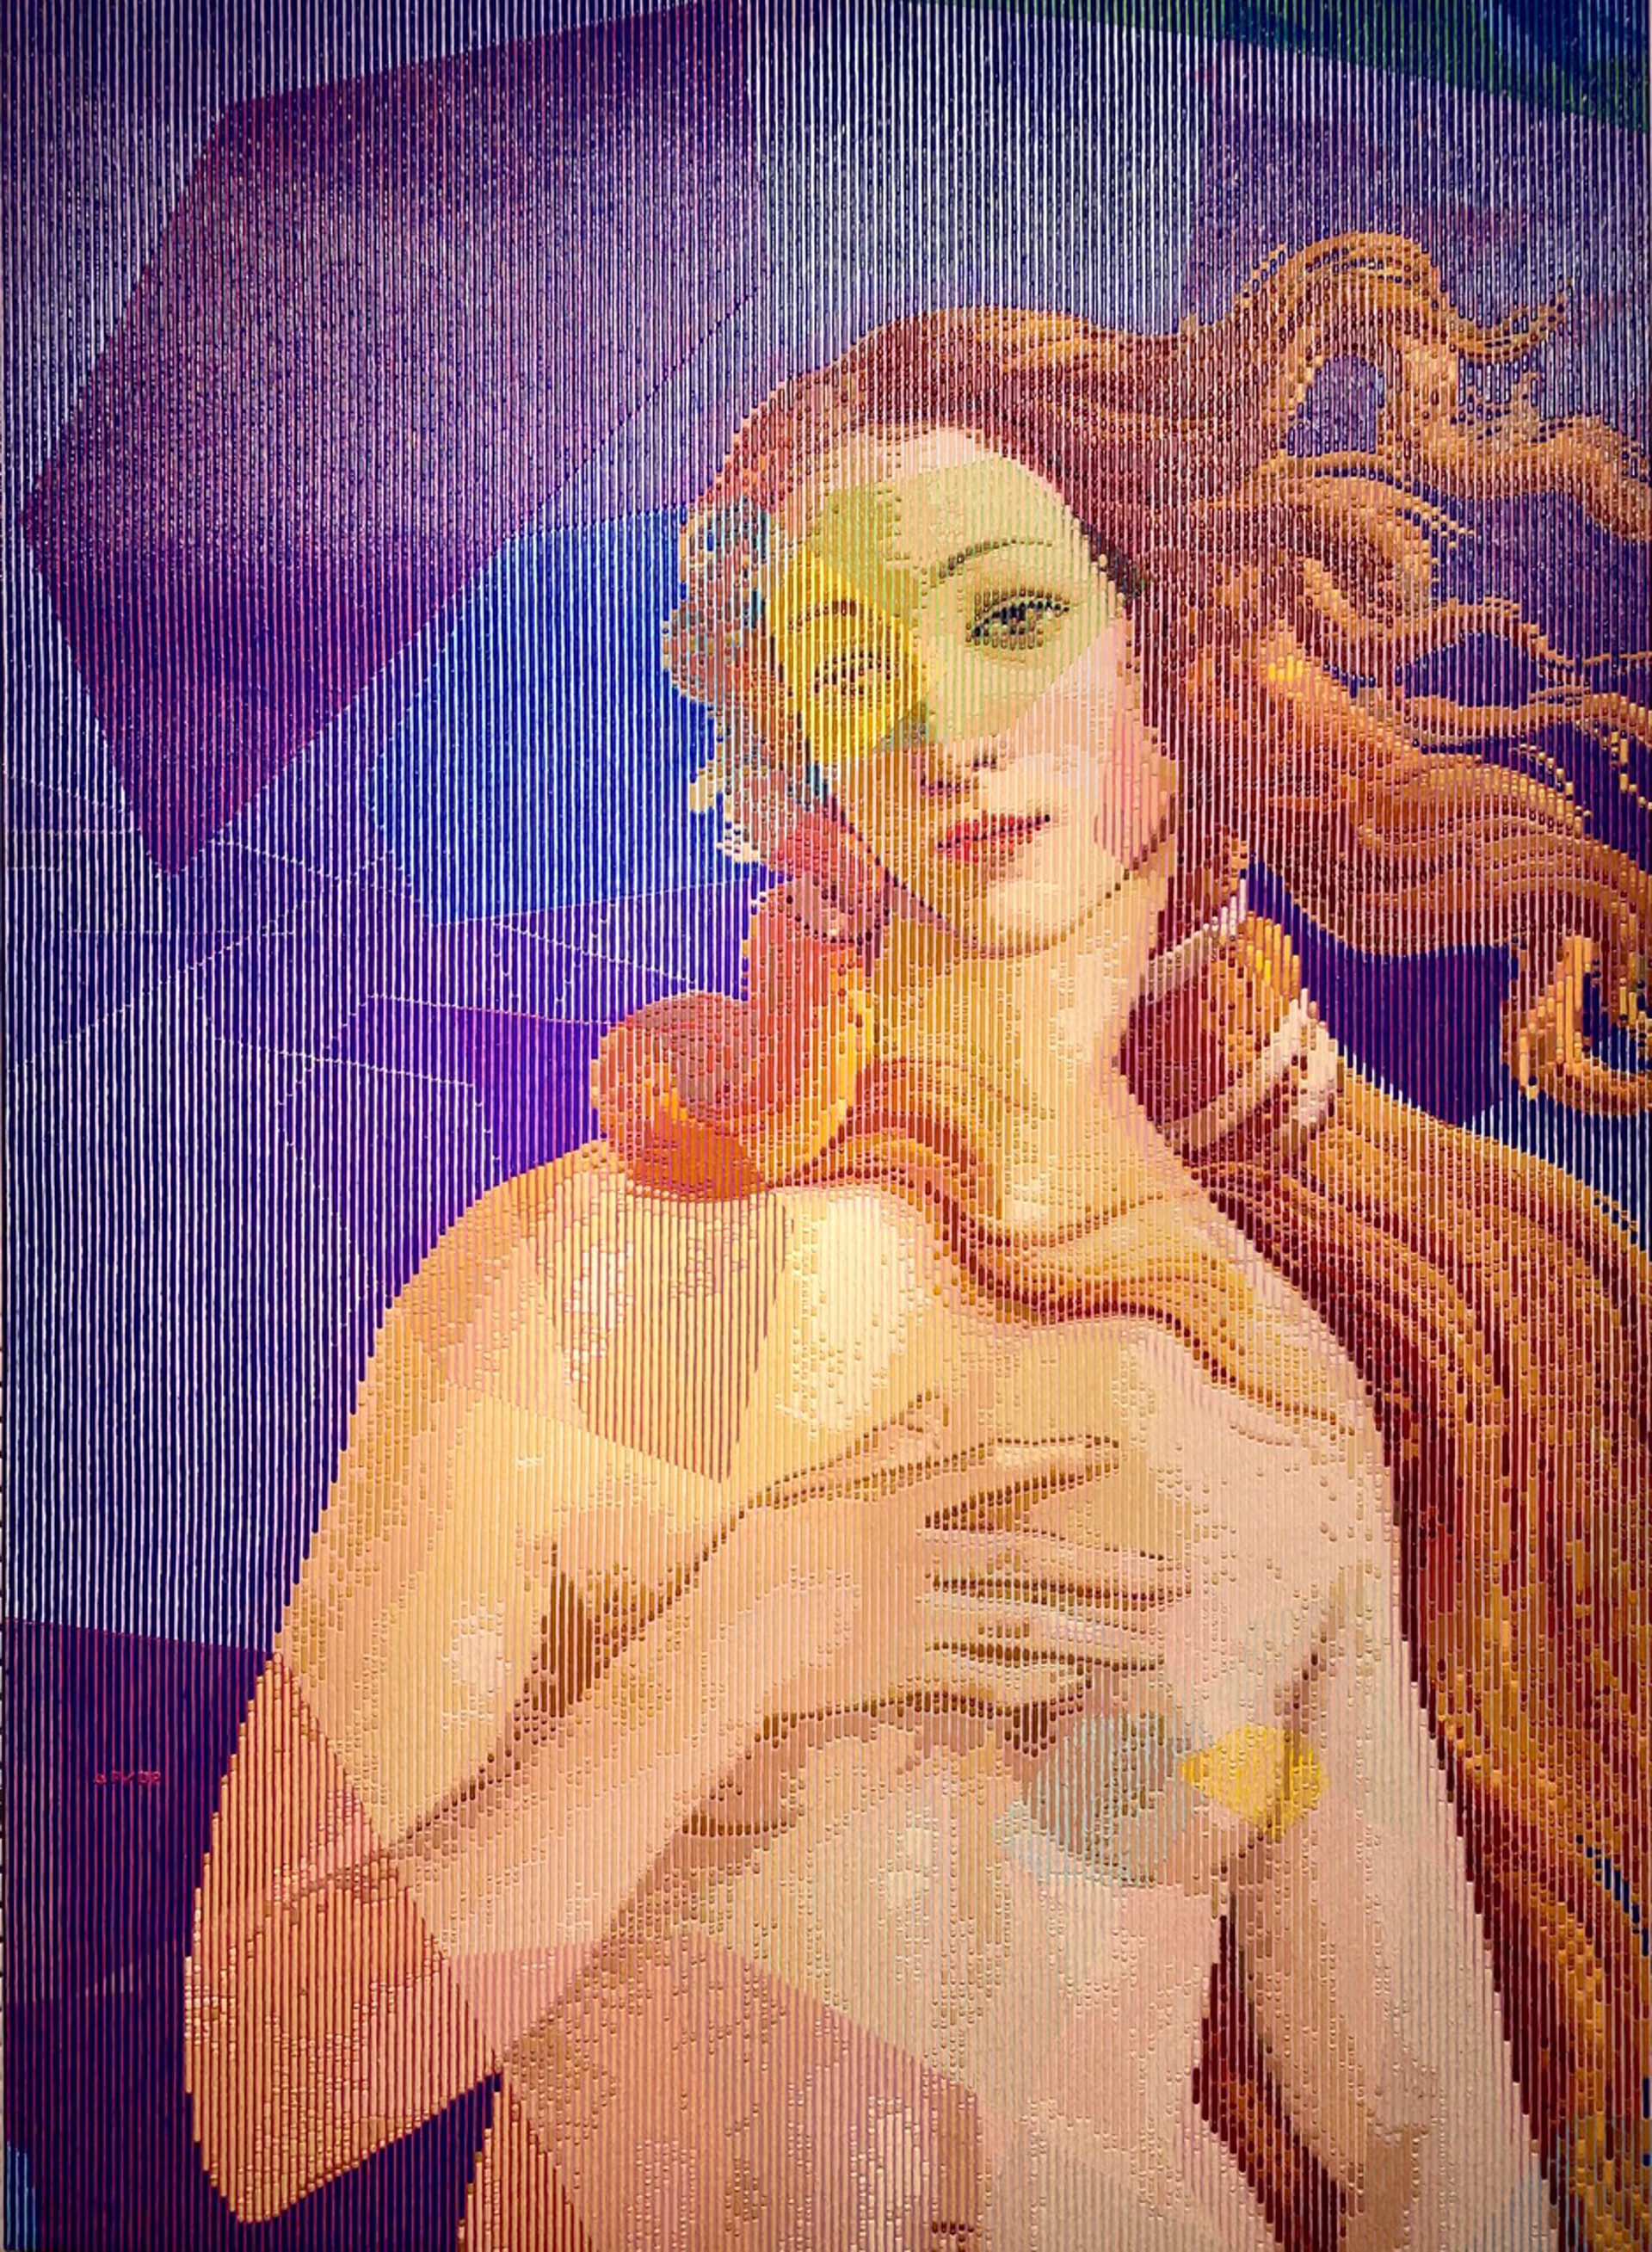 Rebirth of Venus by Alea Pinar Du Pre